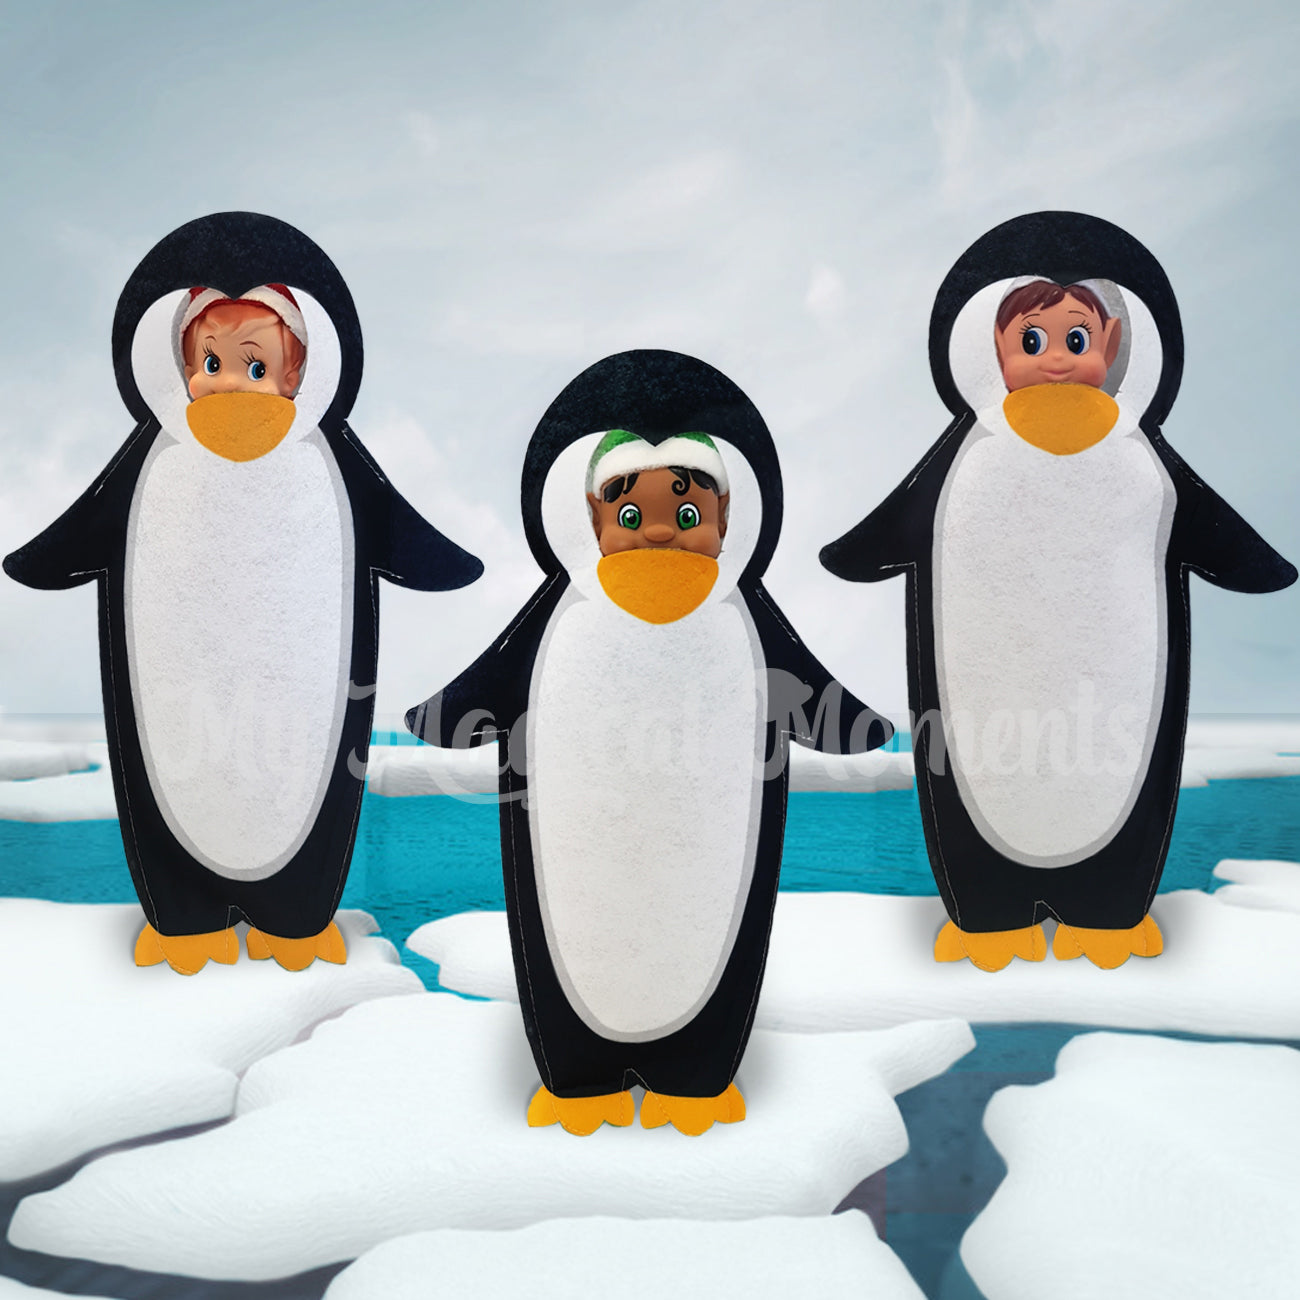 Three elves dressed as penguins on ice